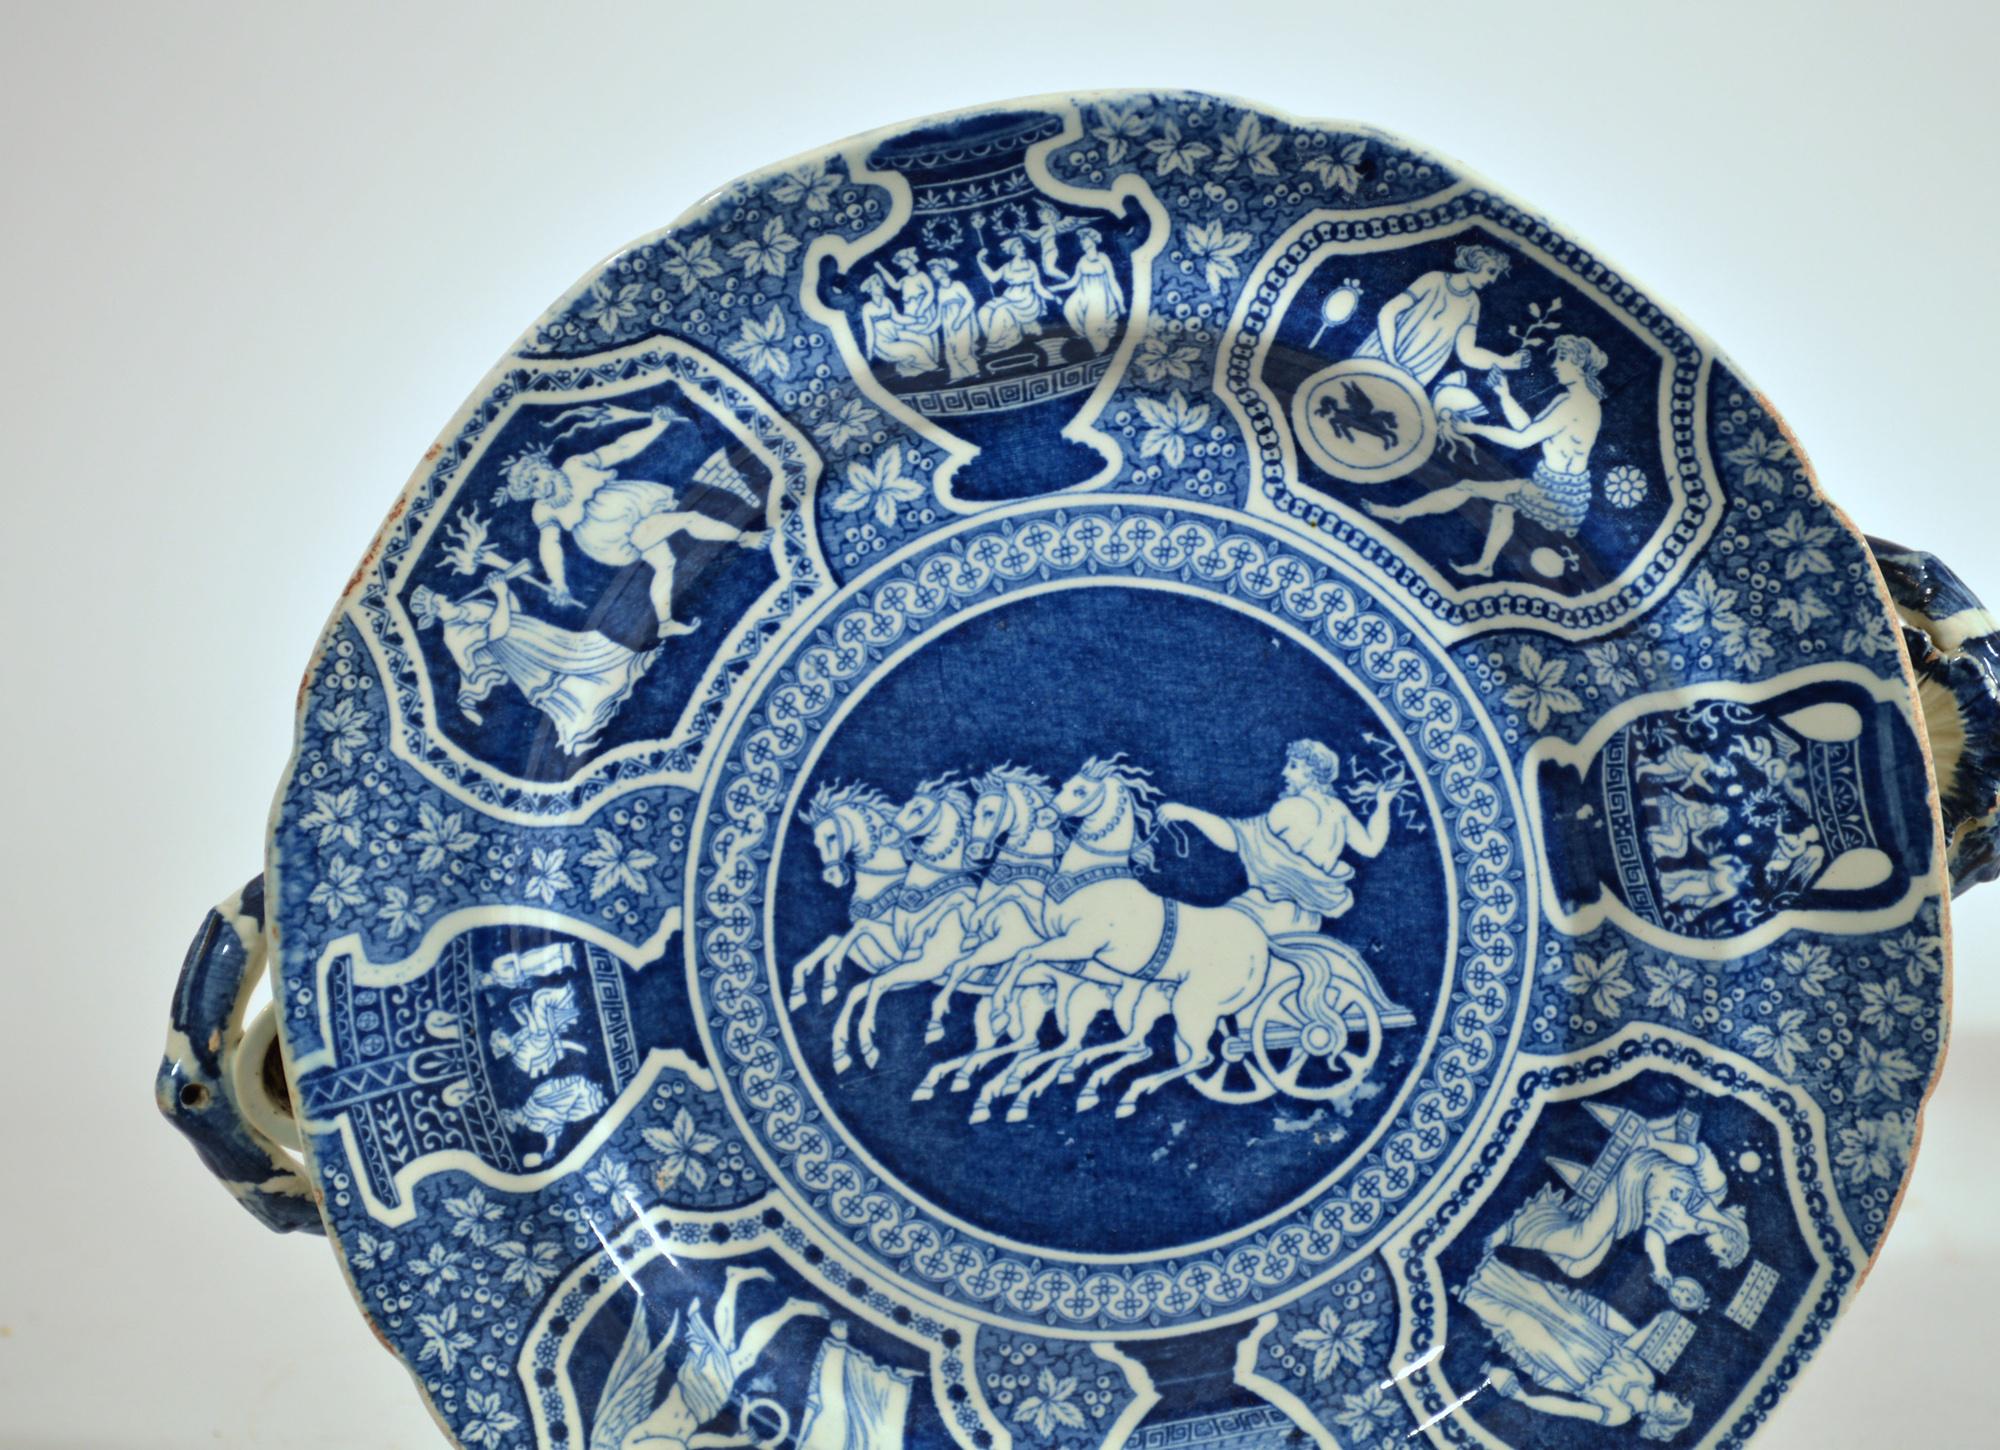 griechische keramik geschirr